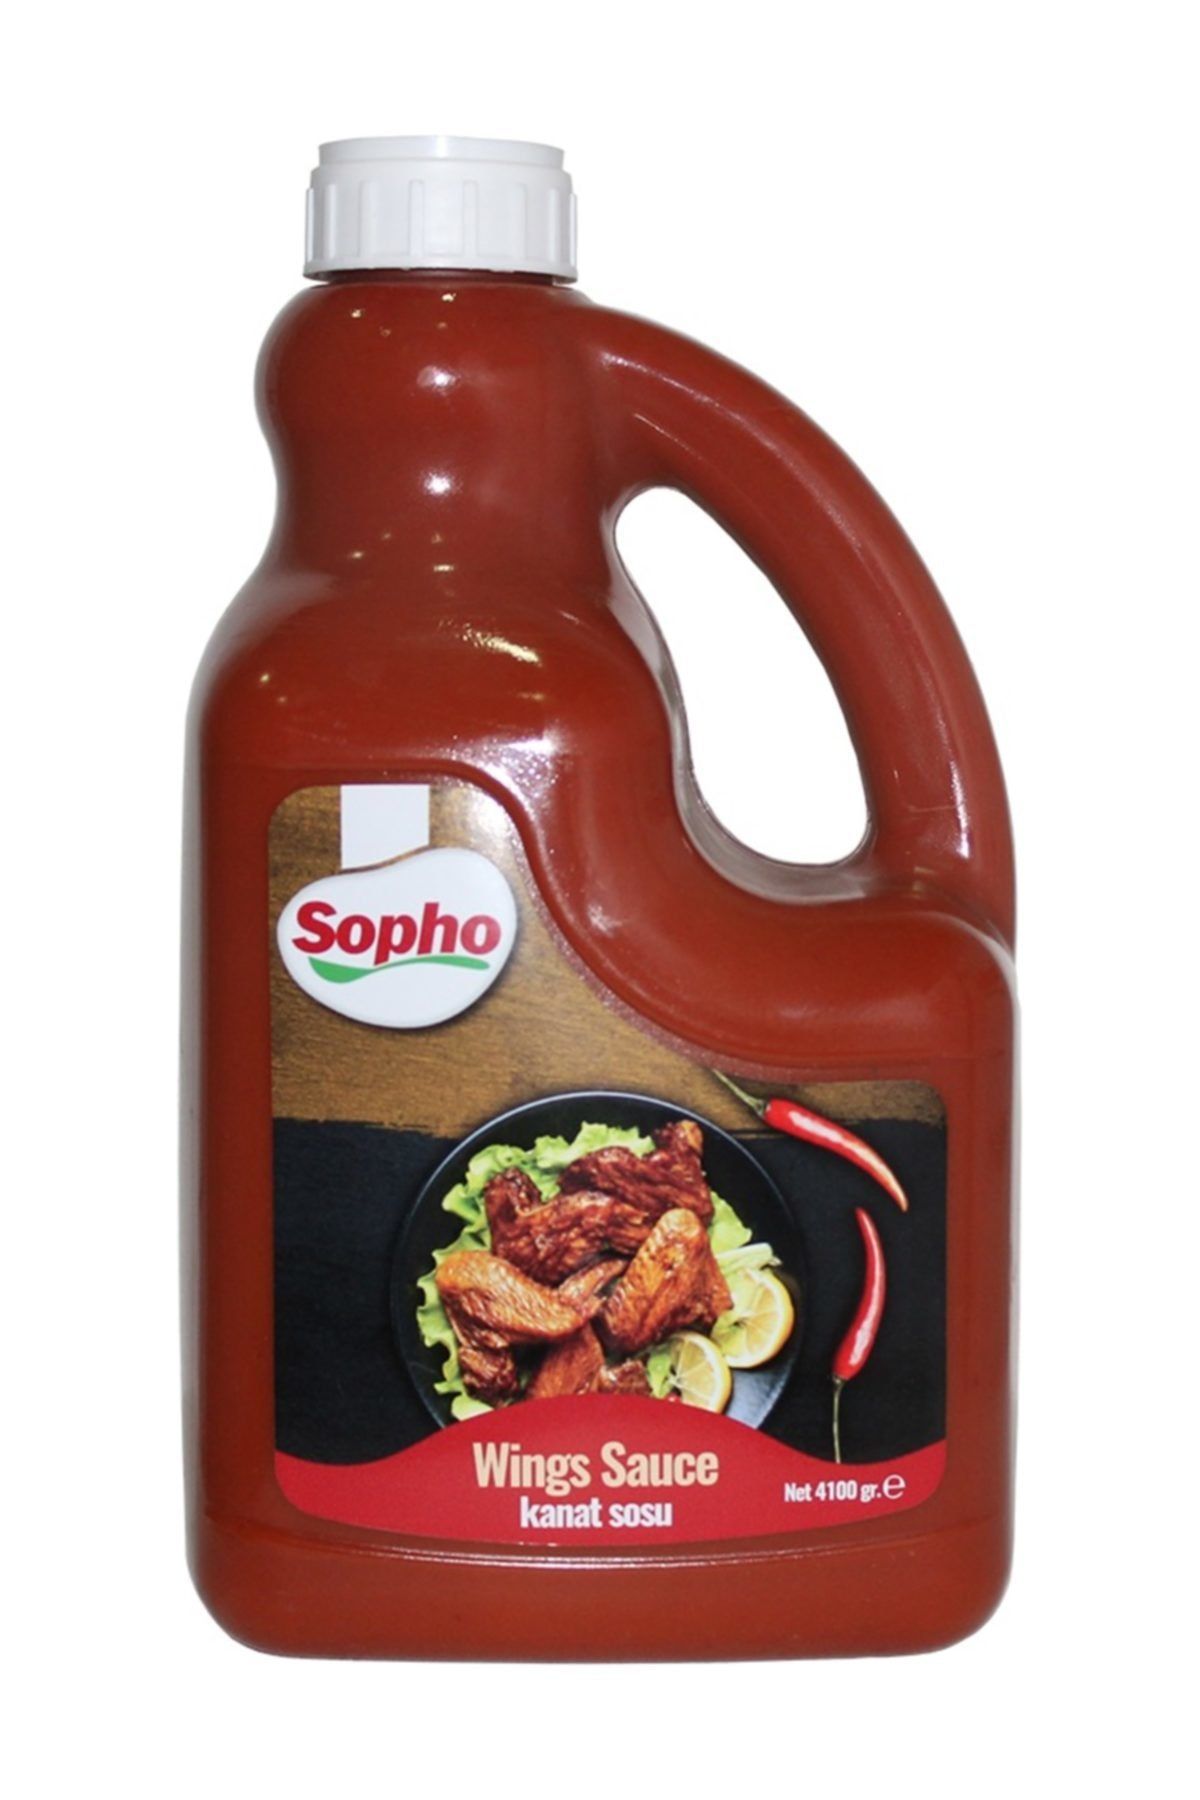 Sopho Wing Sauce 4100 Gr. (kanat Sosu)